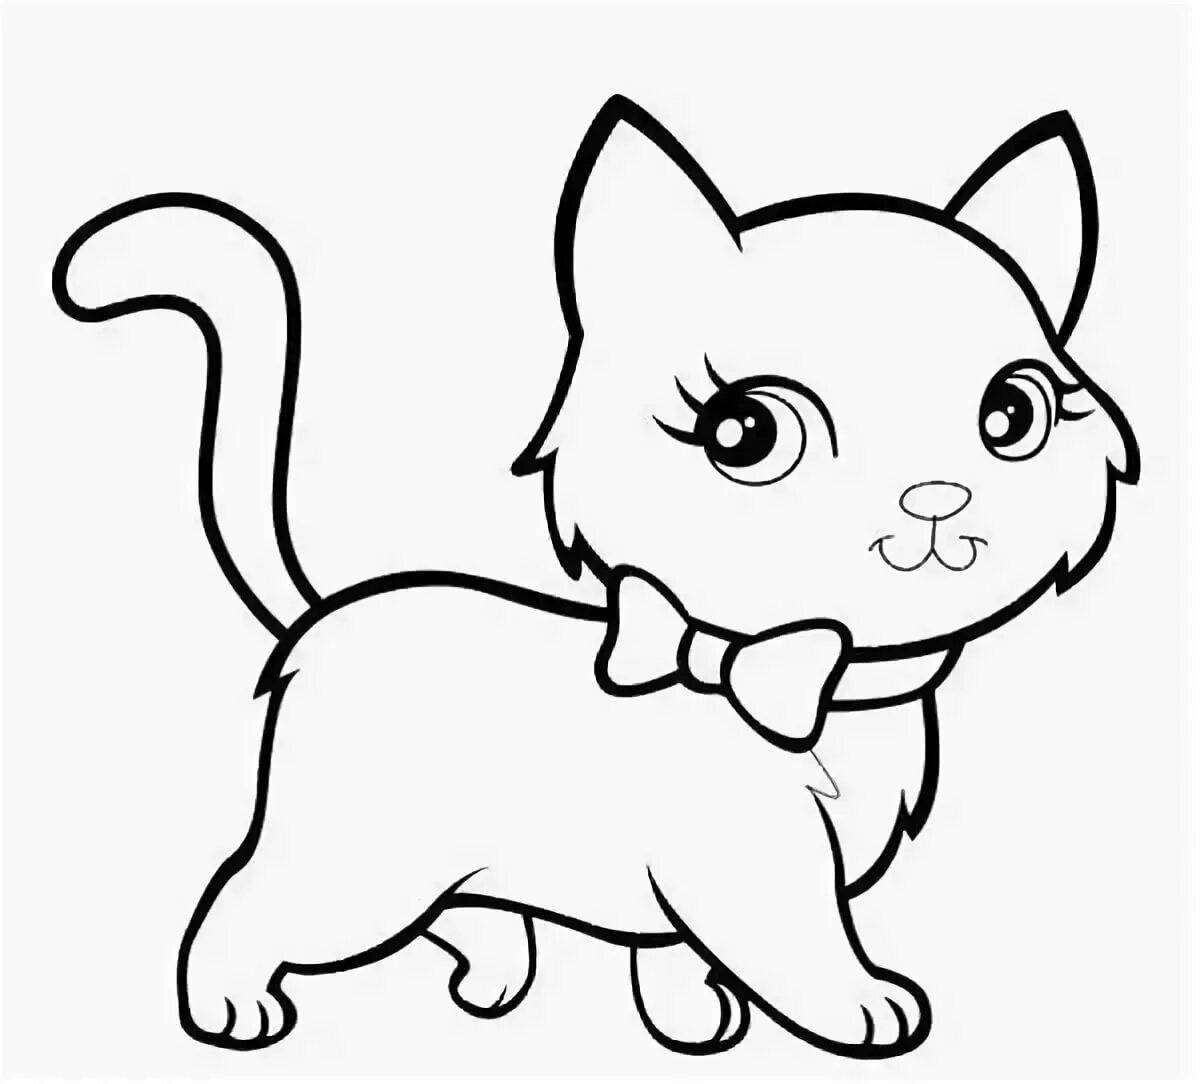 Cute cute cat coloring book for kids